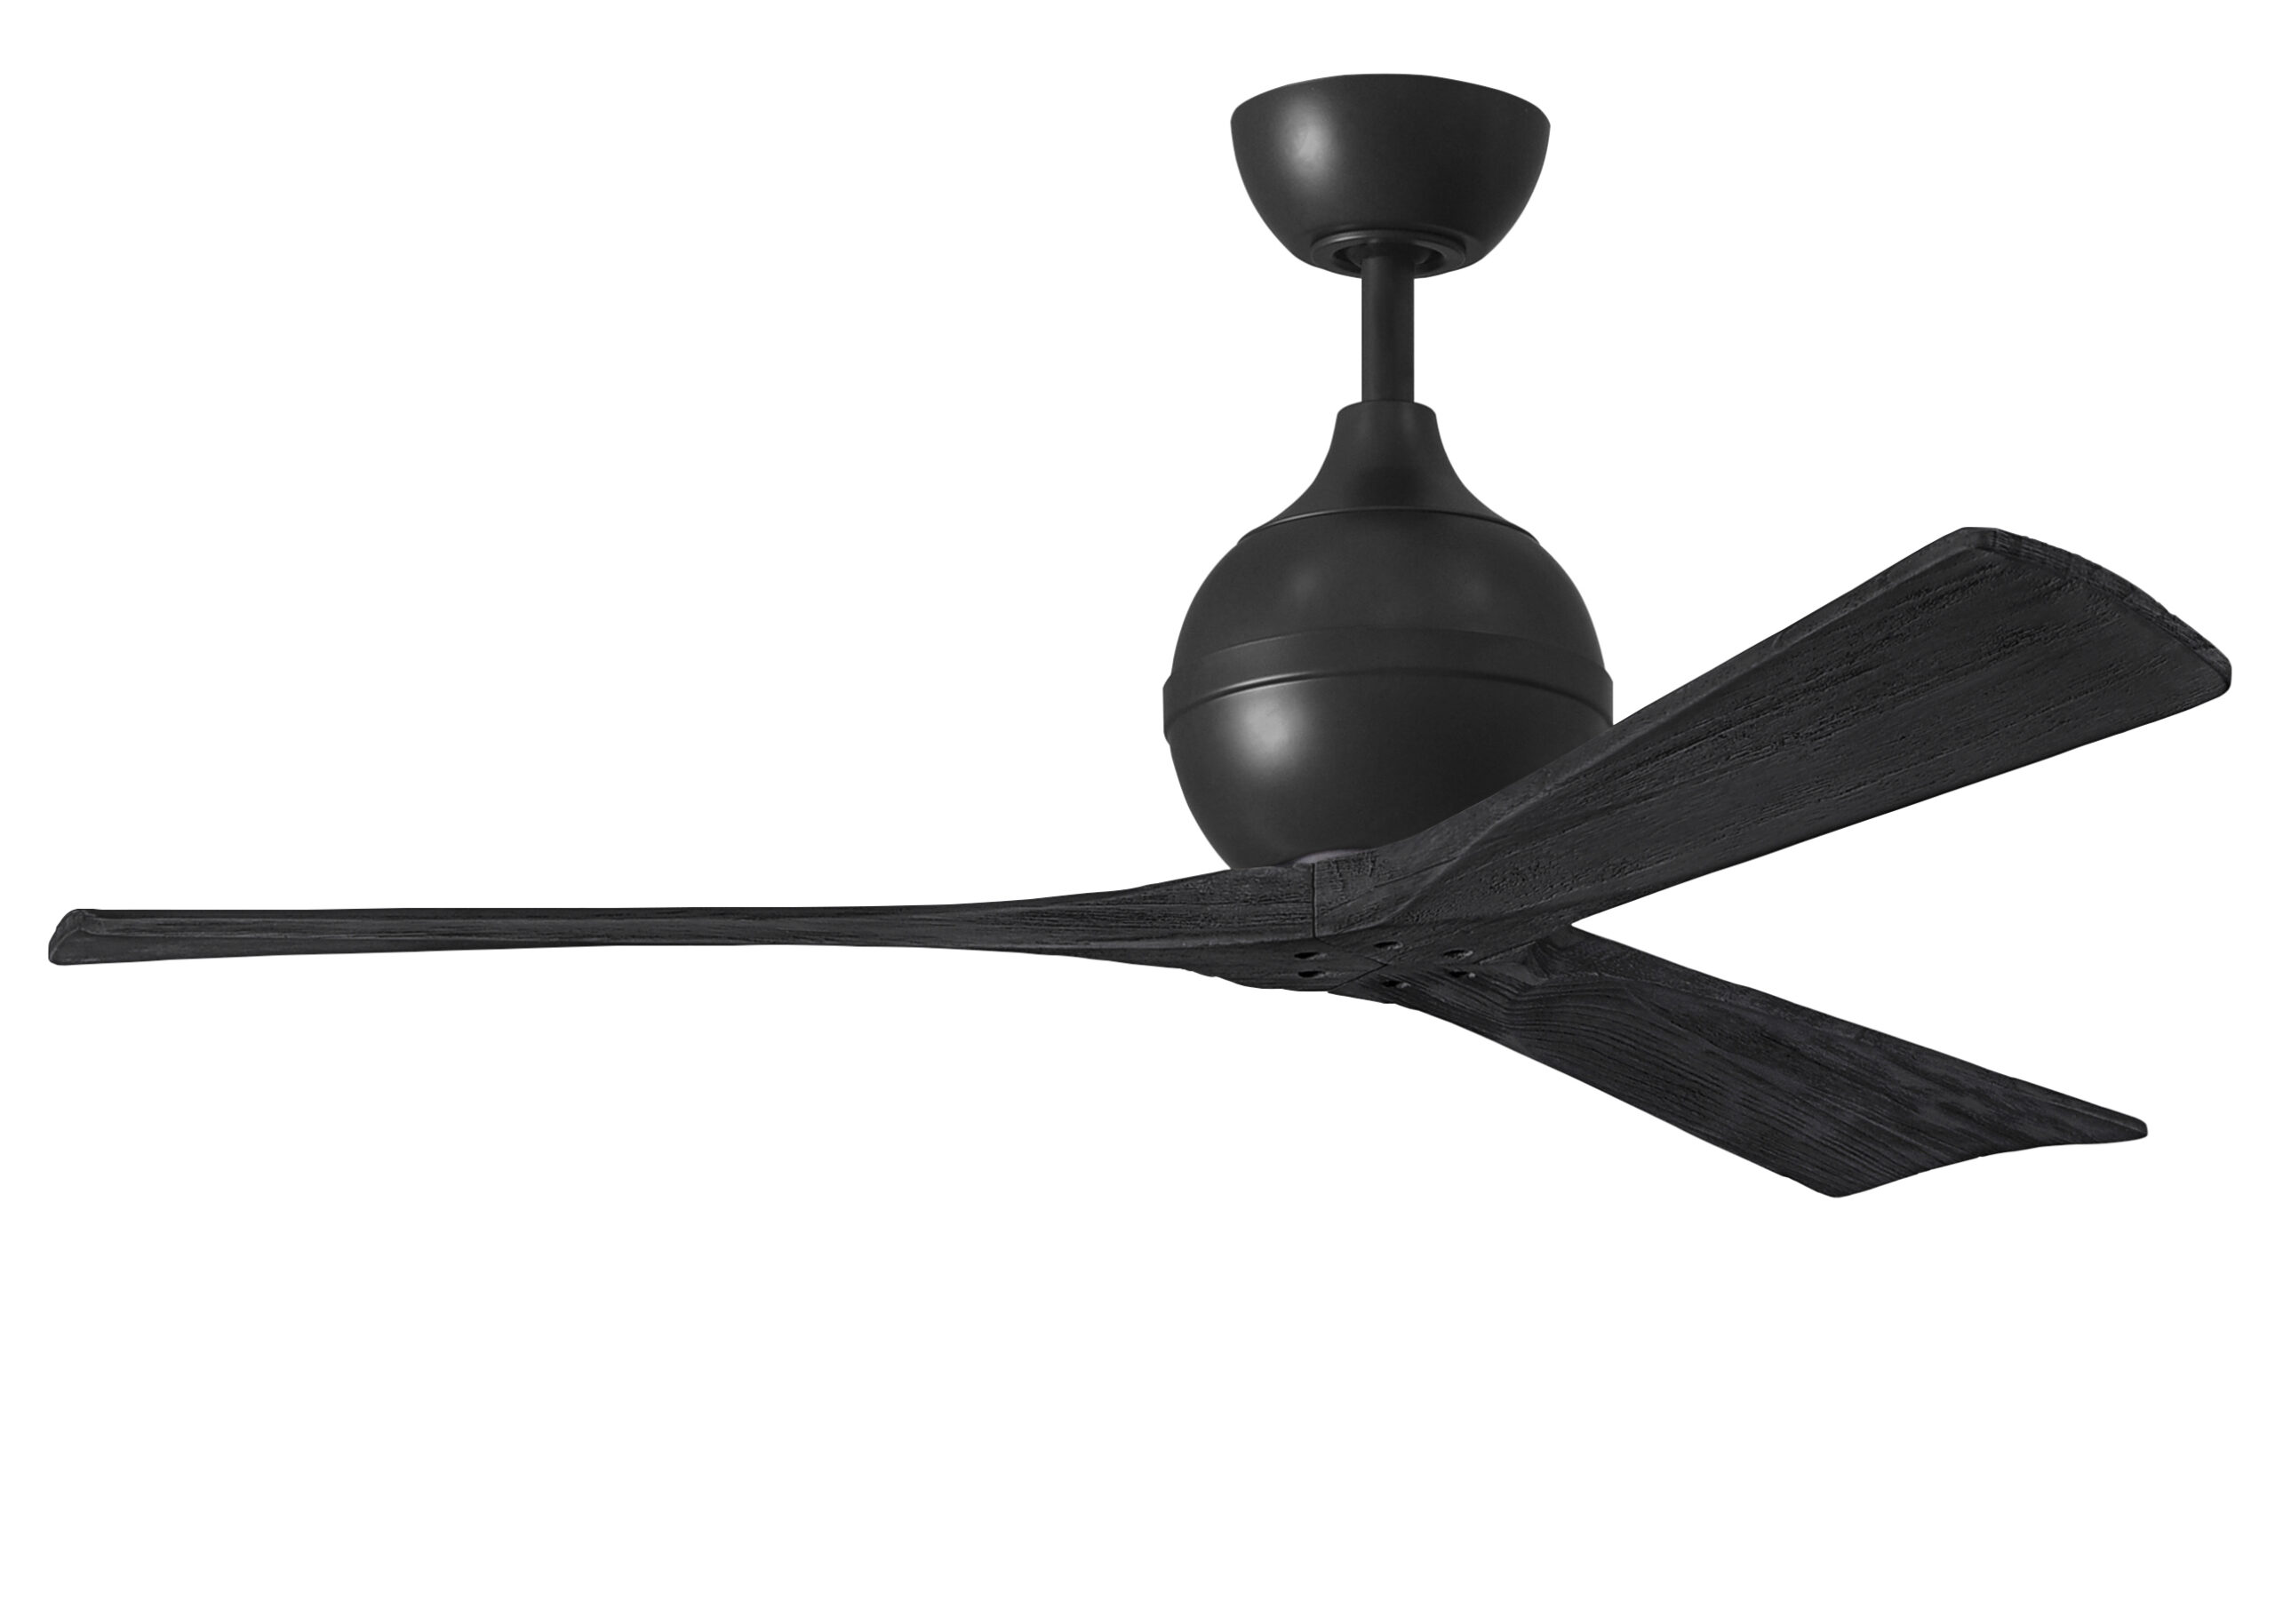 Irene-3 ceiling fan in matte black finish with 52